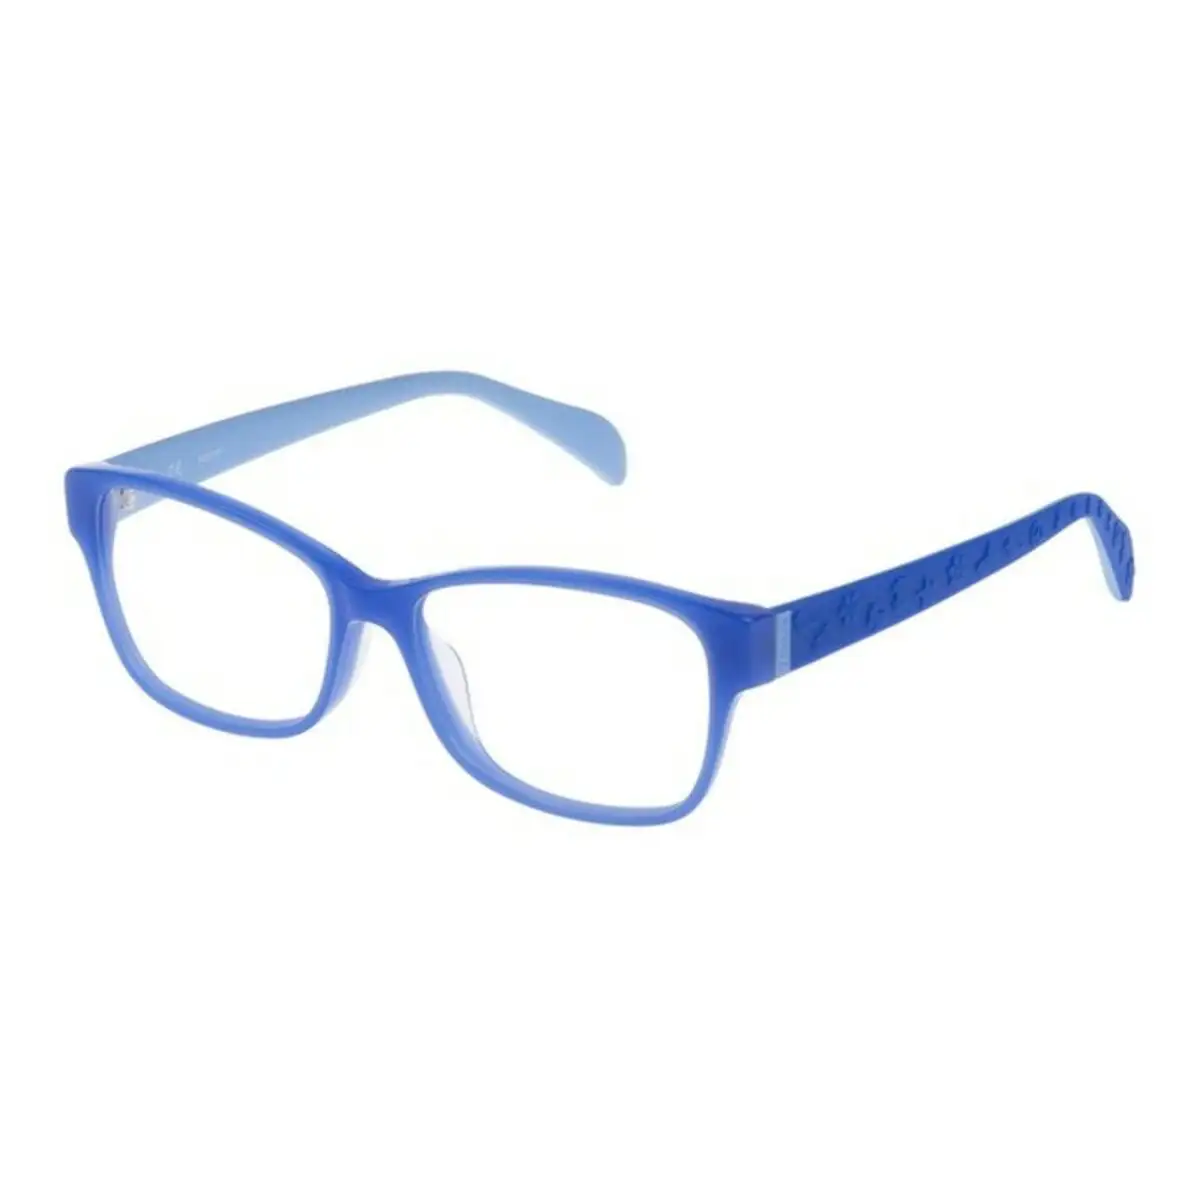 Monture de lunettes femme tous vto878530d27 53 mm bleu o 53 mm _6160. Bienvenue sur DIAYTAR SENEGAL - Où Chaque Détail compte. Plongez dans notre univers et choisissez des produits qui ajoutent de l'éclat et de la joie à votre quotidien.